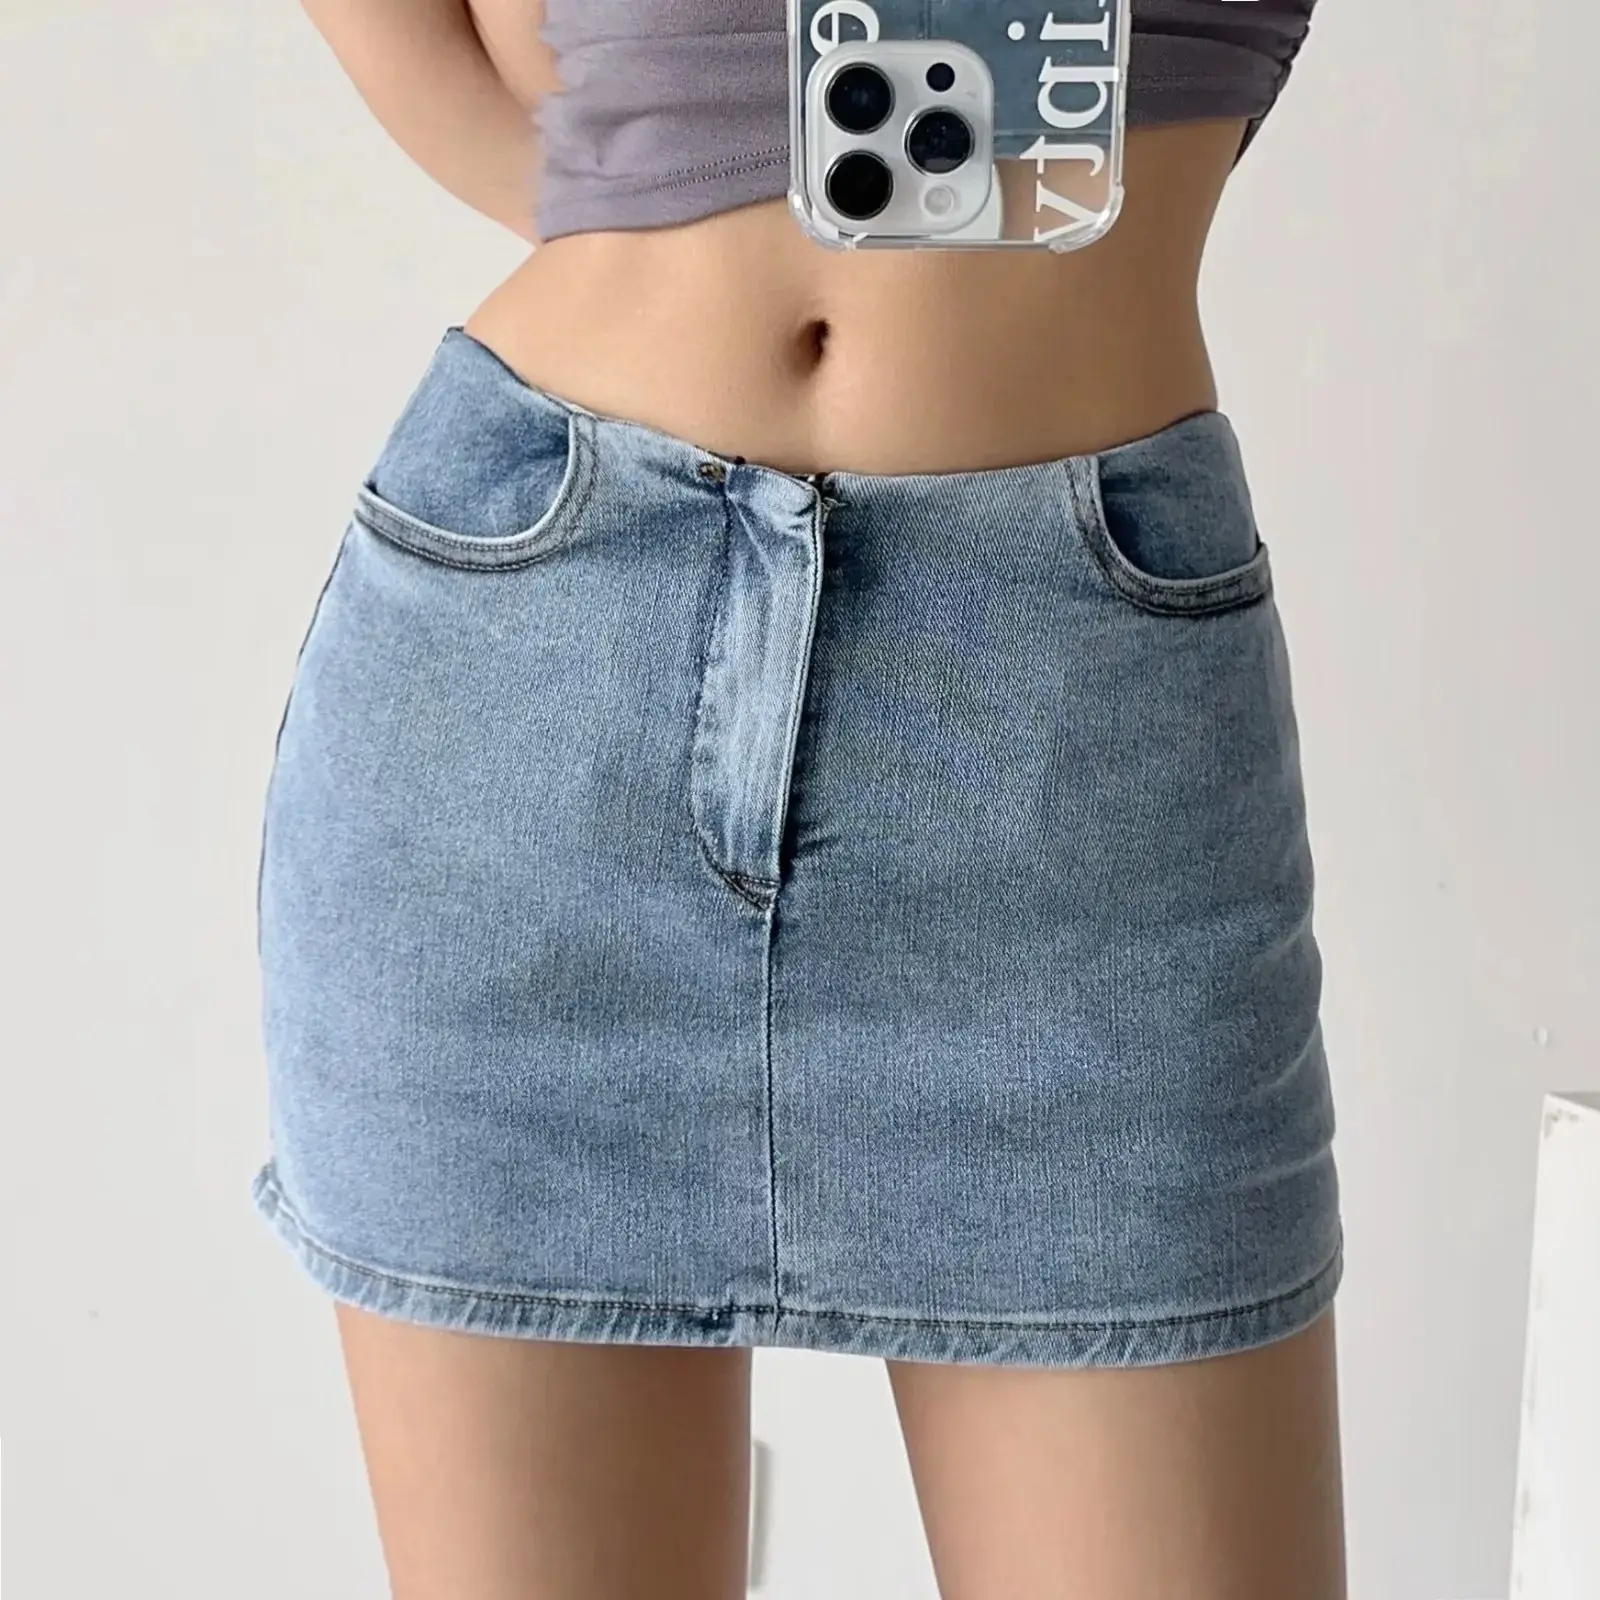 Оптовая продажа новая низкая талия горячая девушка джинсовая мини-юбка противоскользящая Сексуальная юбка на бедрах